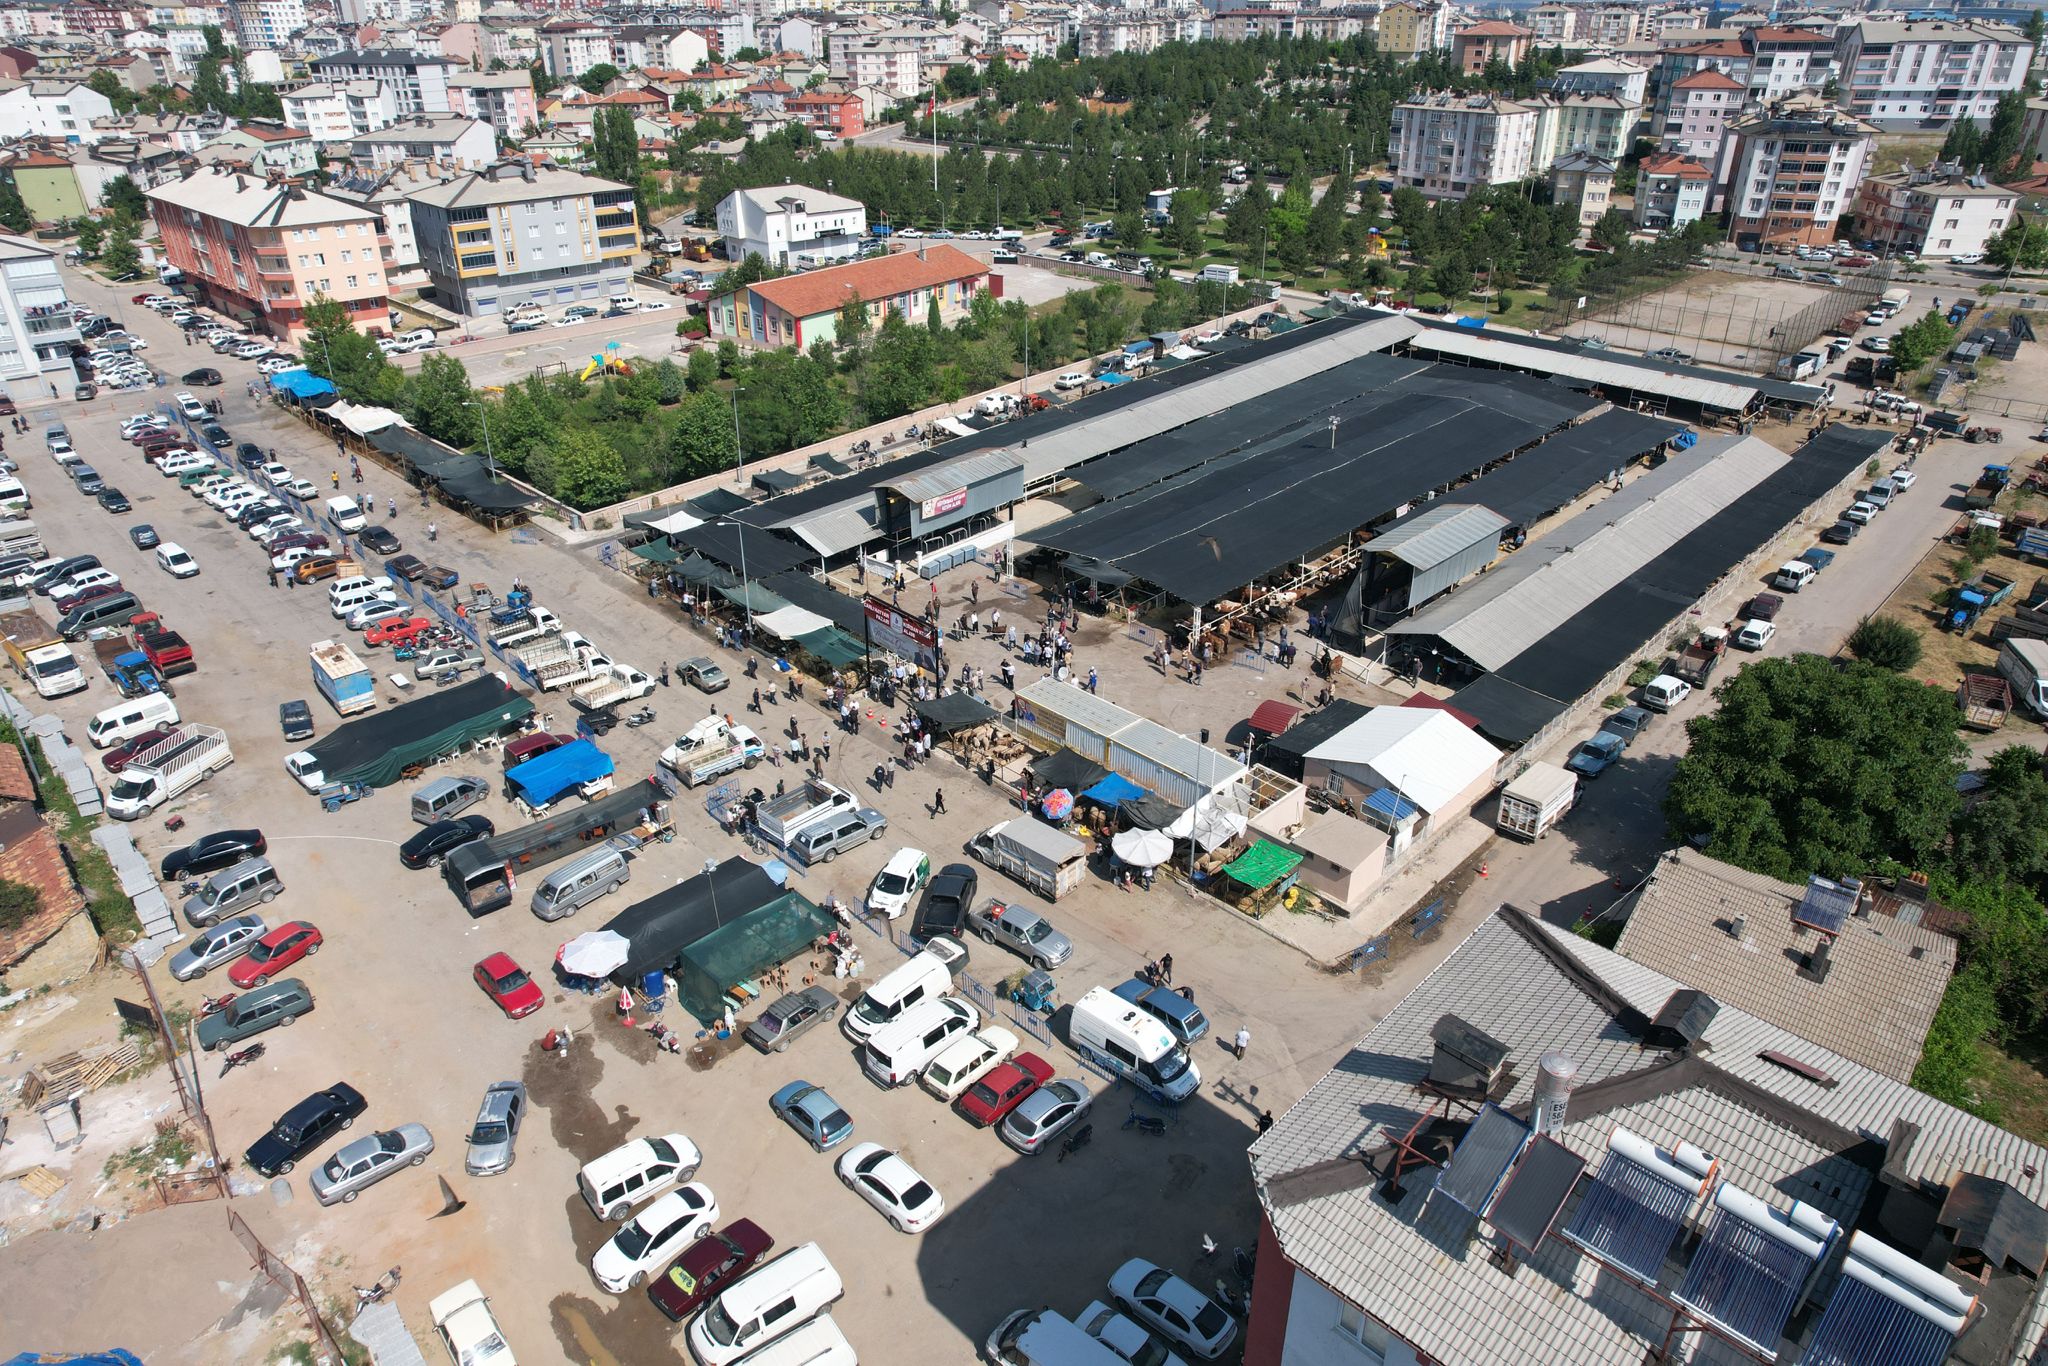 Seydişehir'de canlı hayvan pazarı açıldı